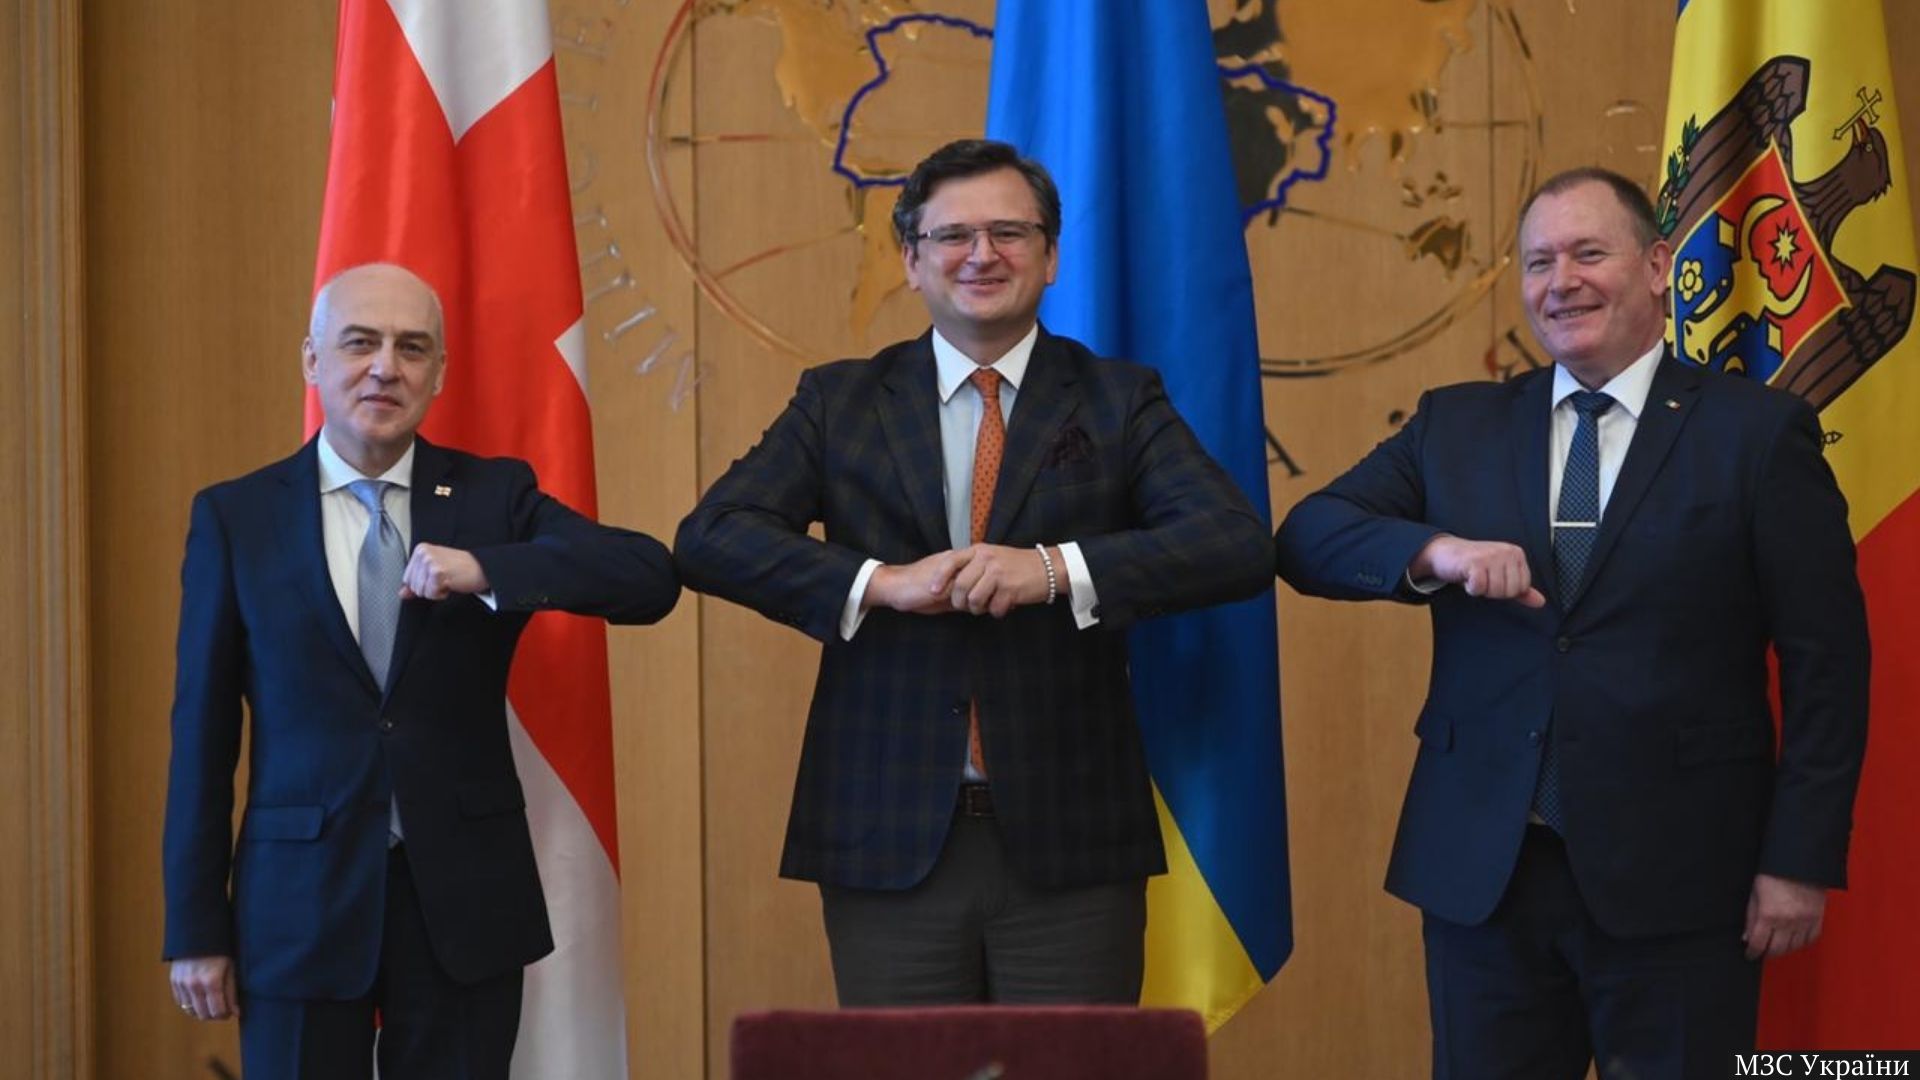 Глави дипломатій України, Грузії та Молдови у форматі Асоційованого тріо відвідають інституції ЄС у Брюсселі. 